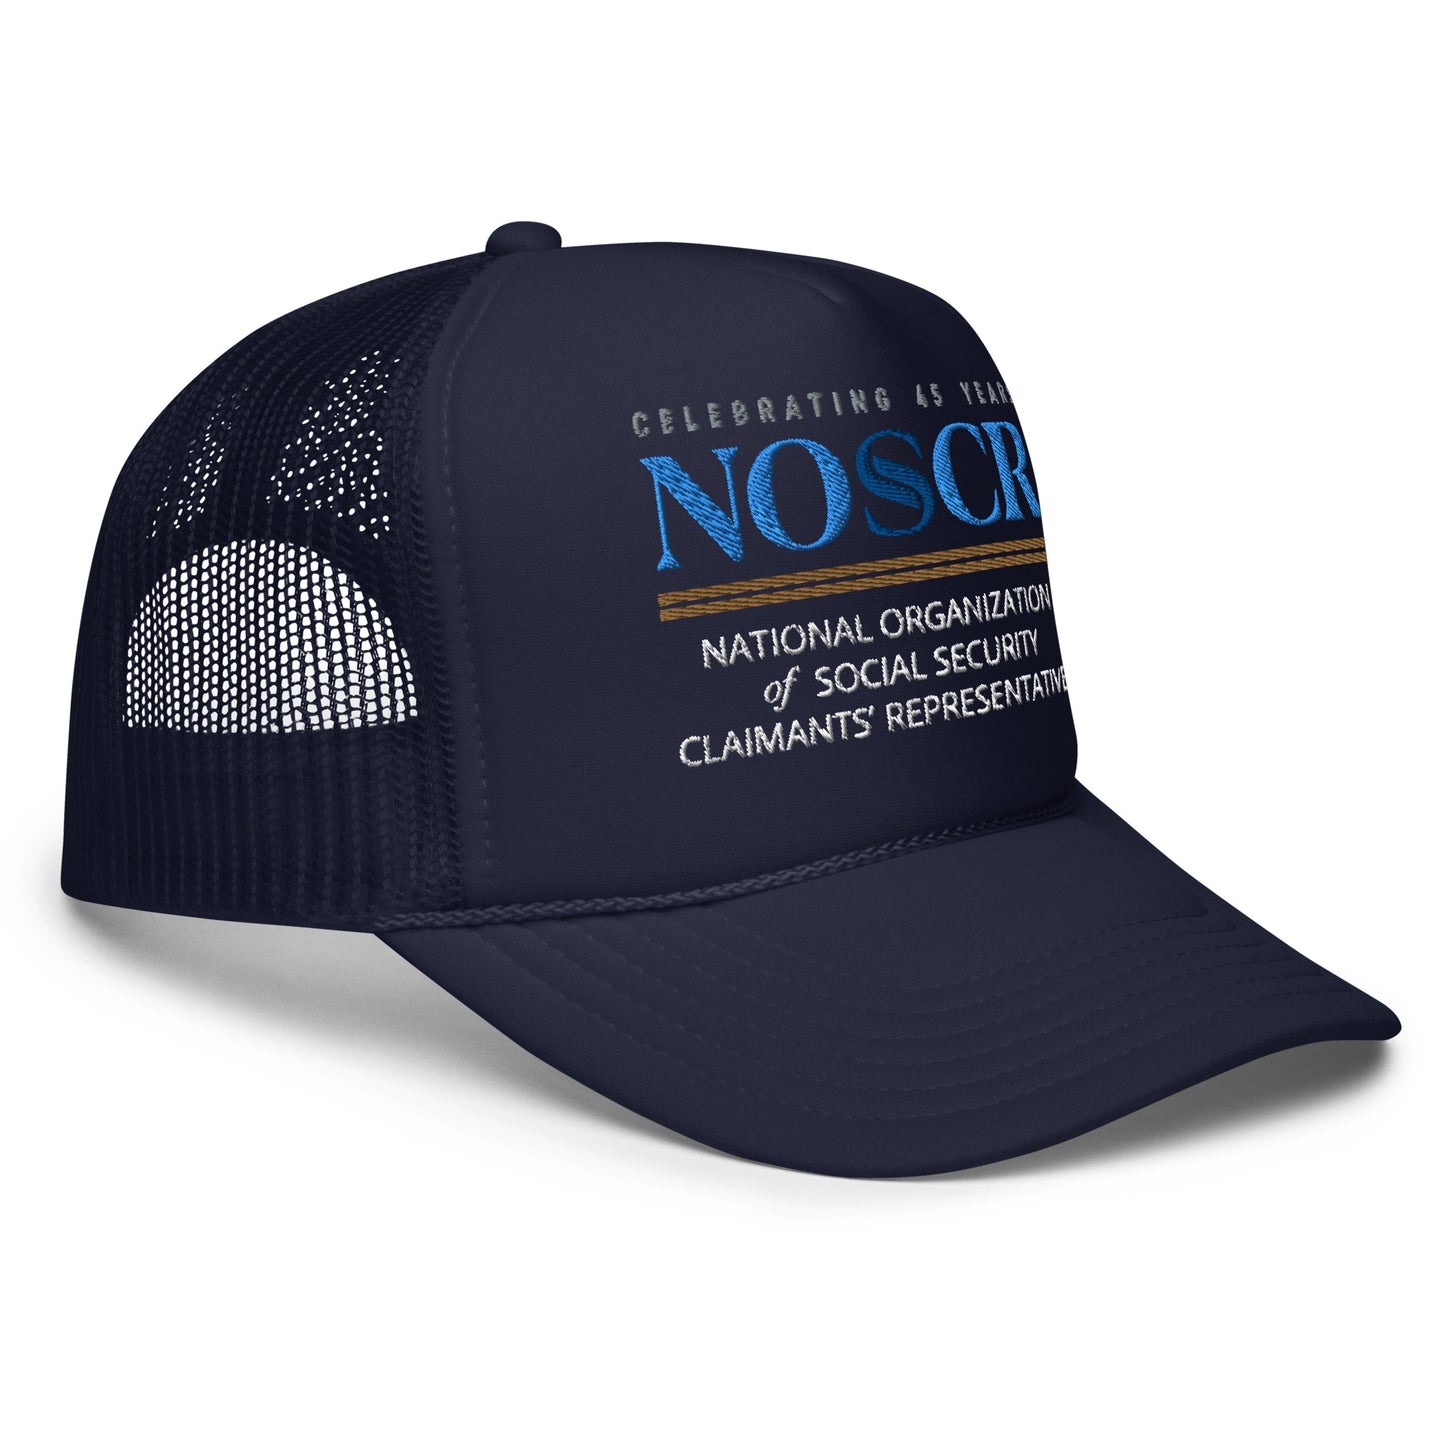 NOSSCR Embroidered Foam trucker hat